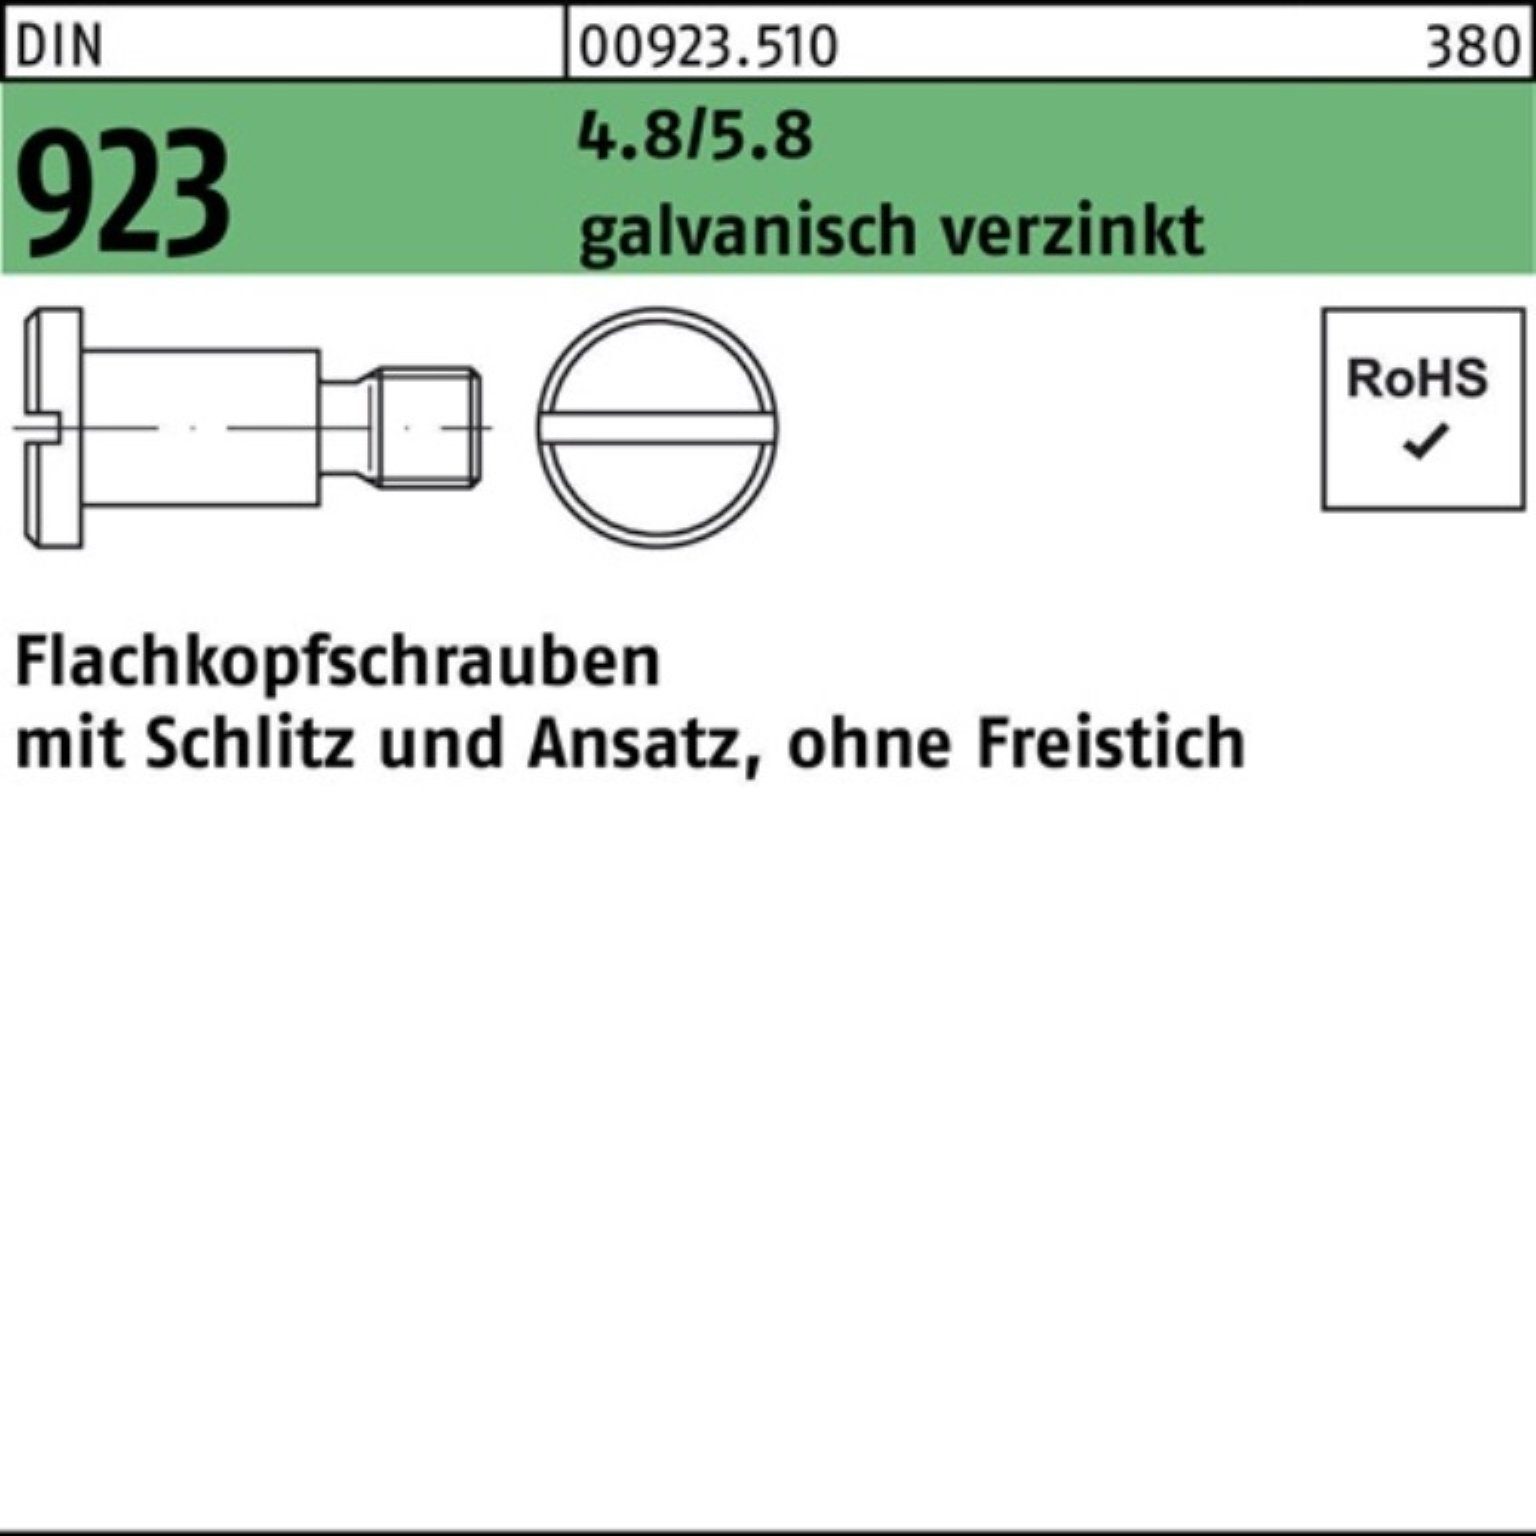 Reyher Schraube M5x8x7,0 Schlitz/Ansatz 100er 4.8/5.8 Pack 923 Flachkopfschraube g DIN